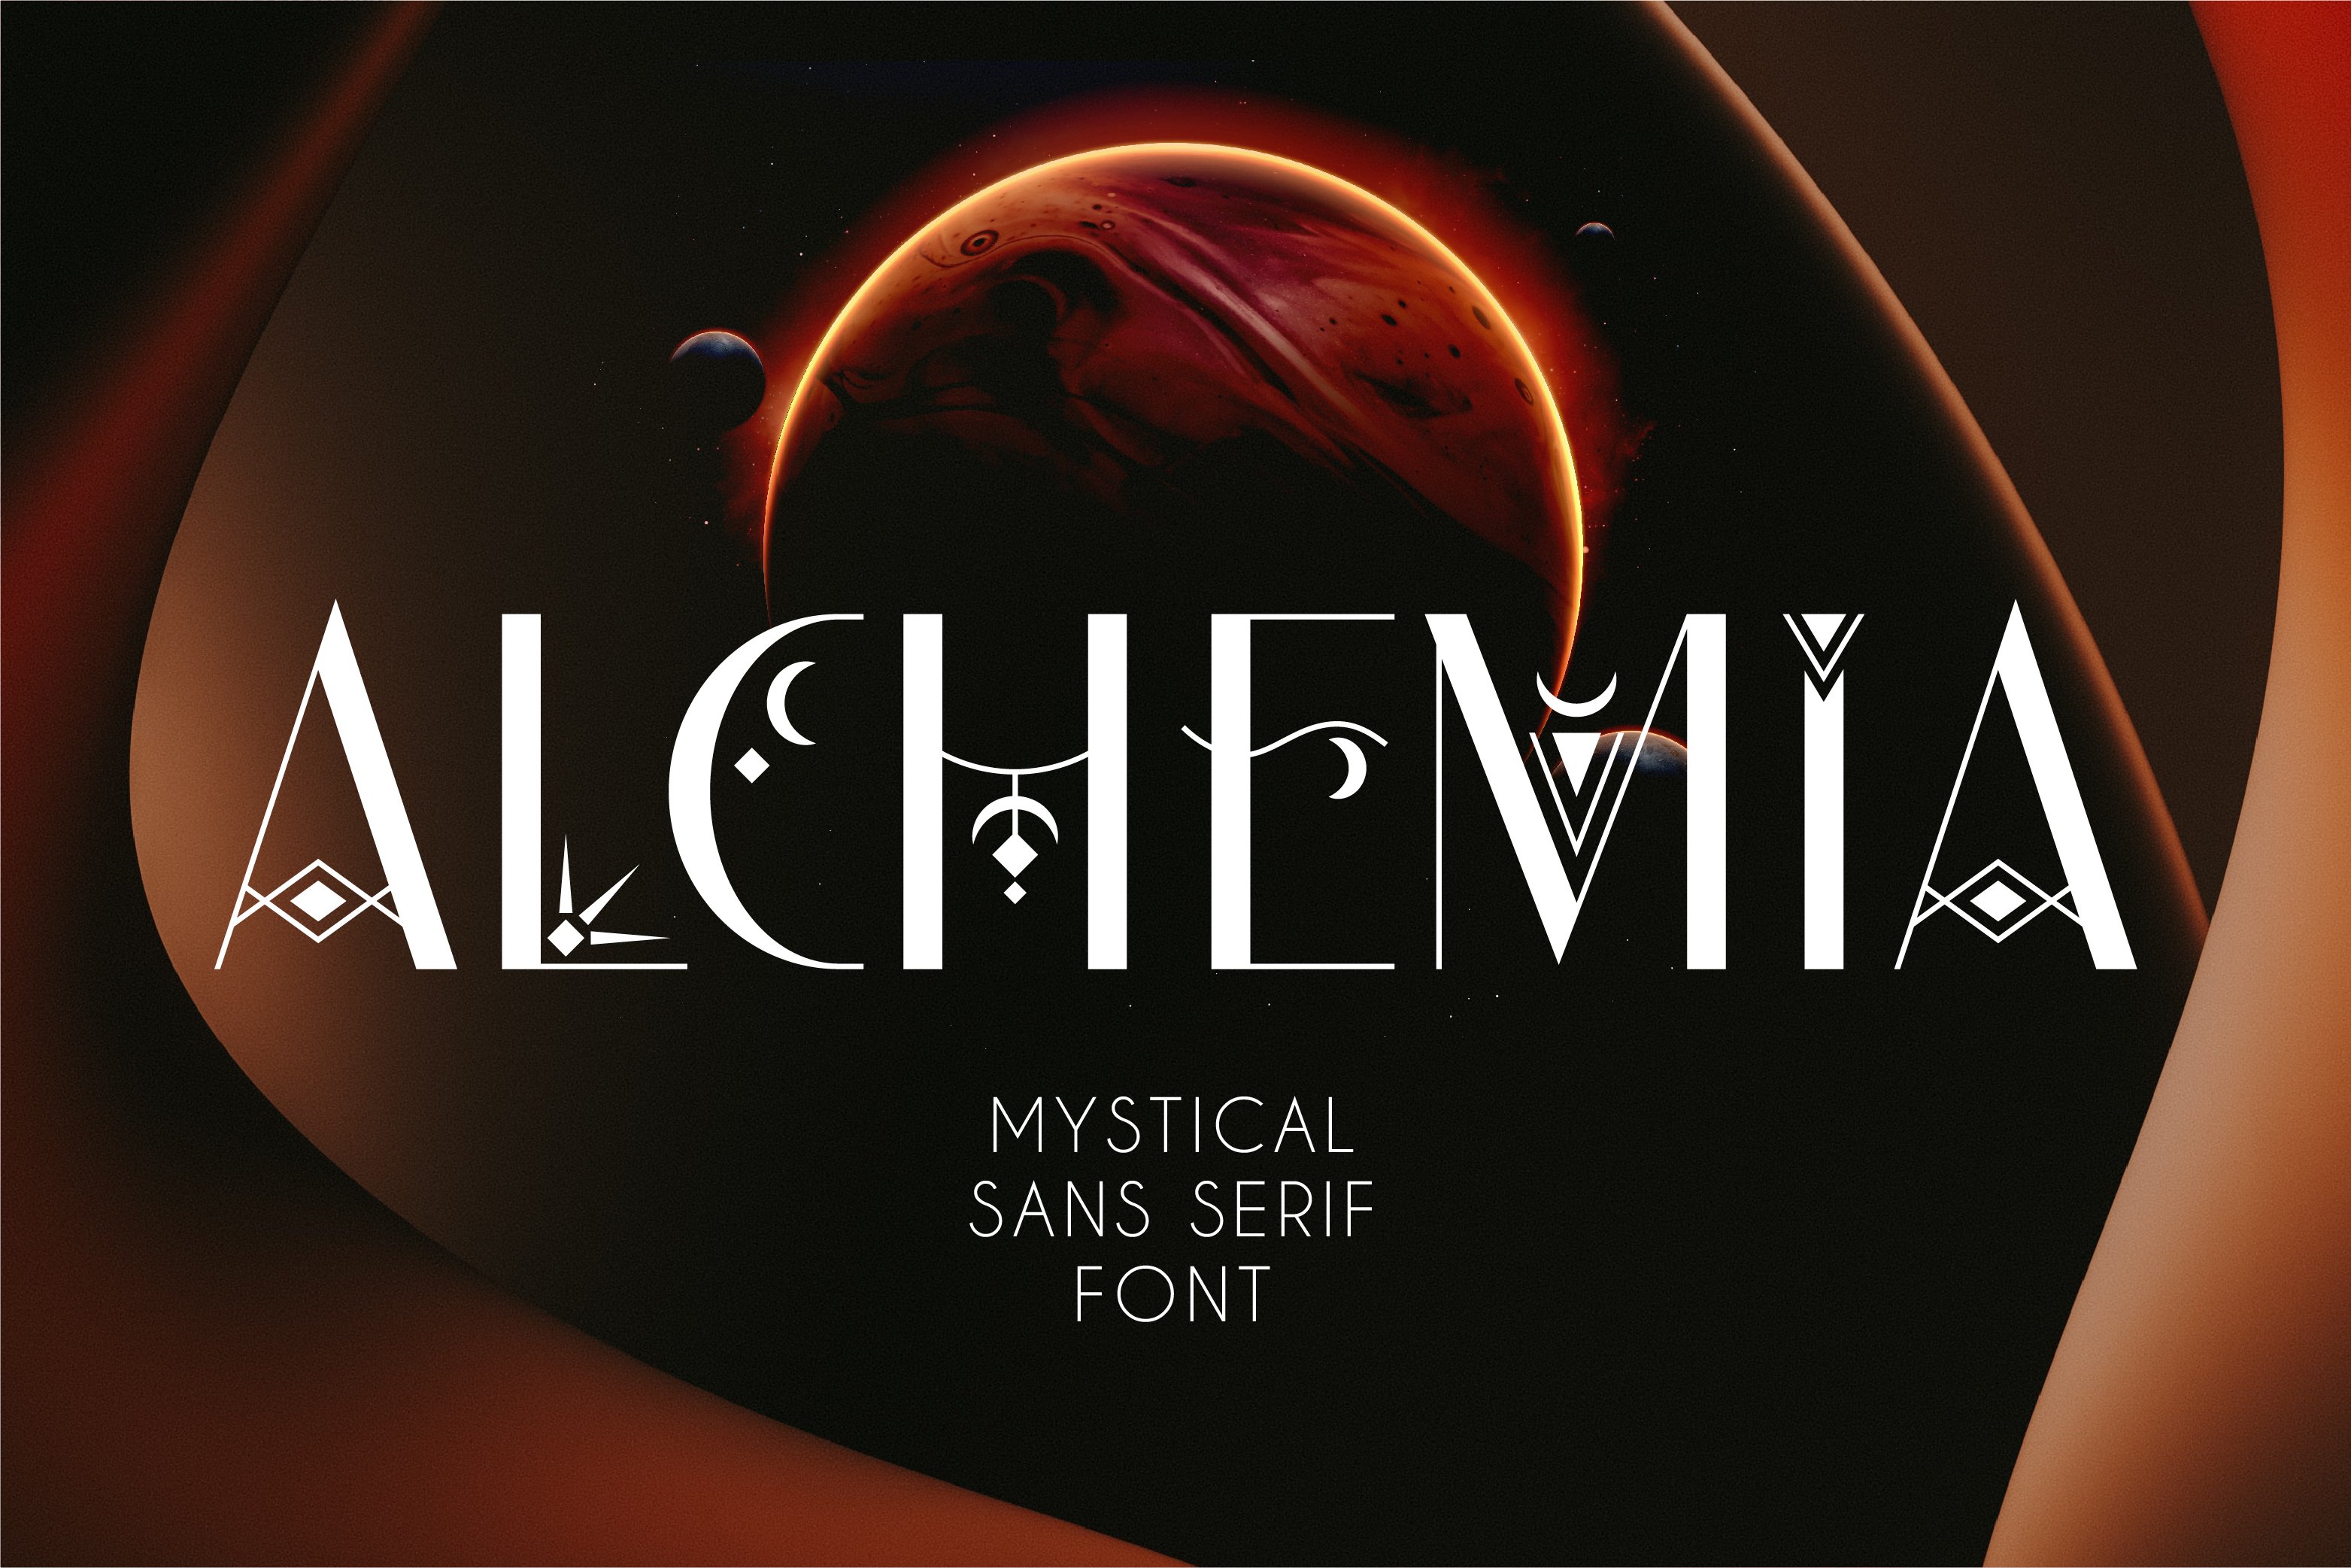 Alchemia - Mystical Sans Serif Font cover image.